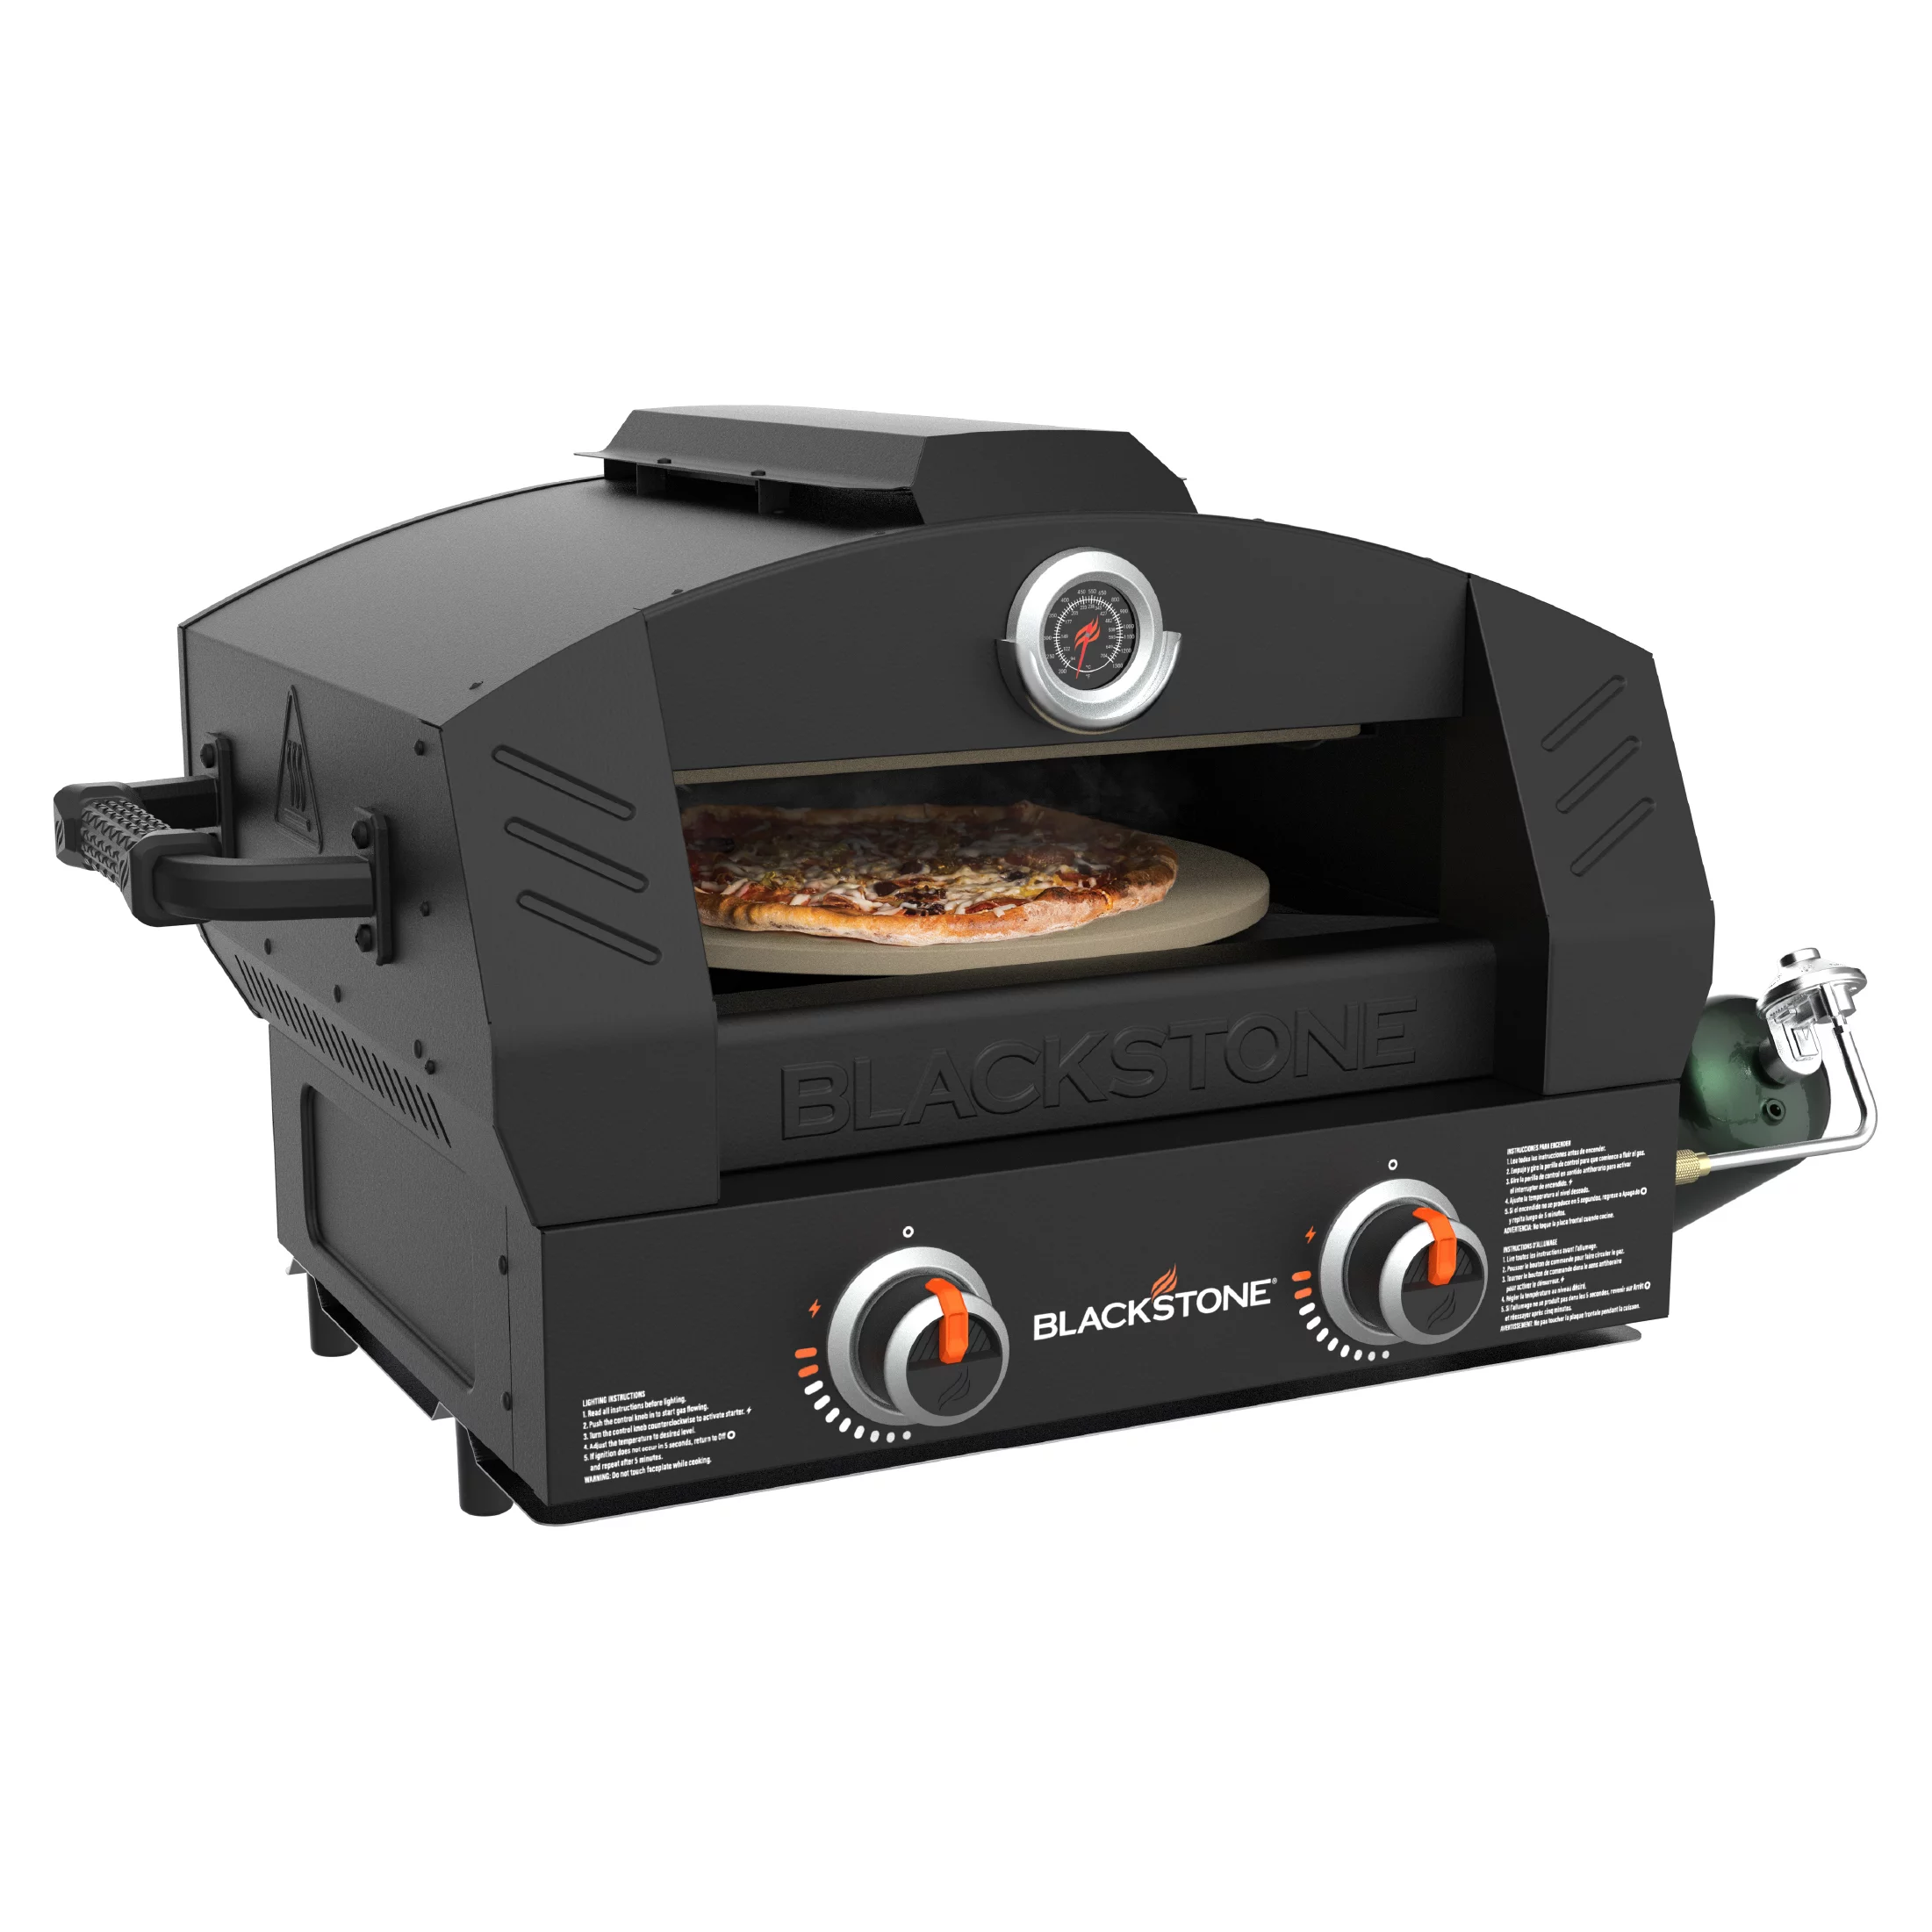 blackstone pizza oven